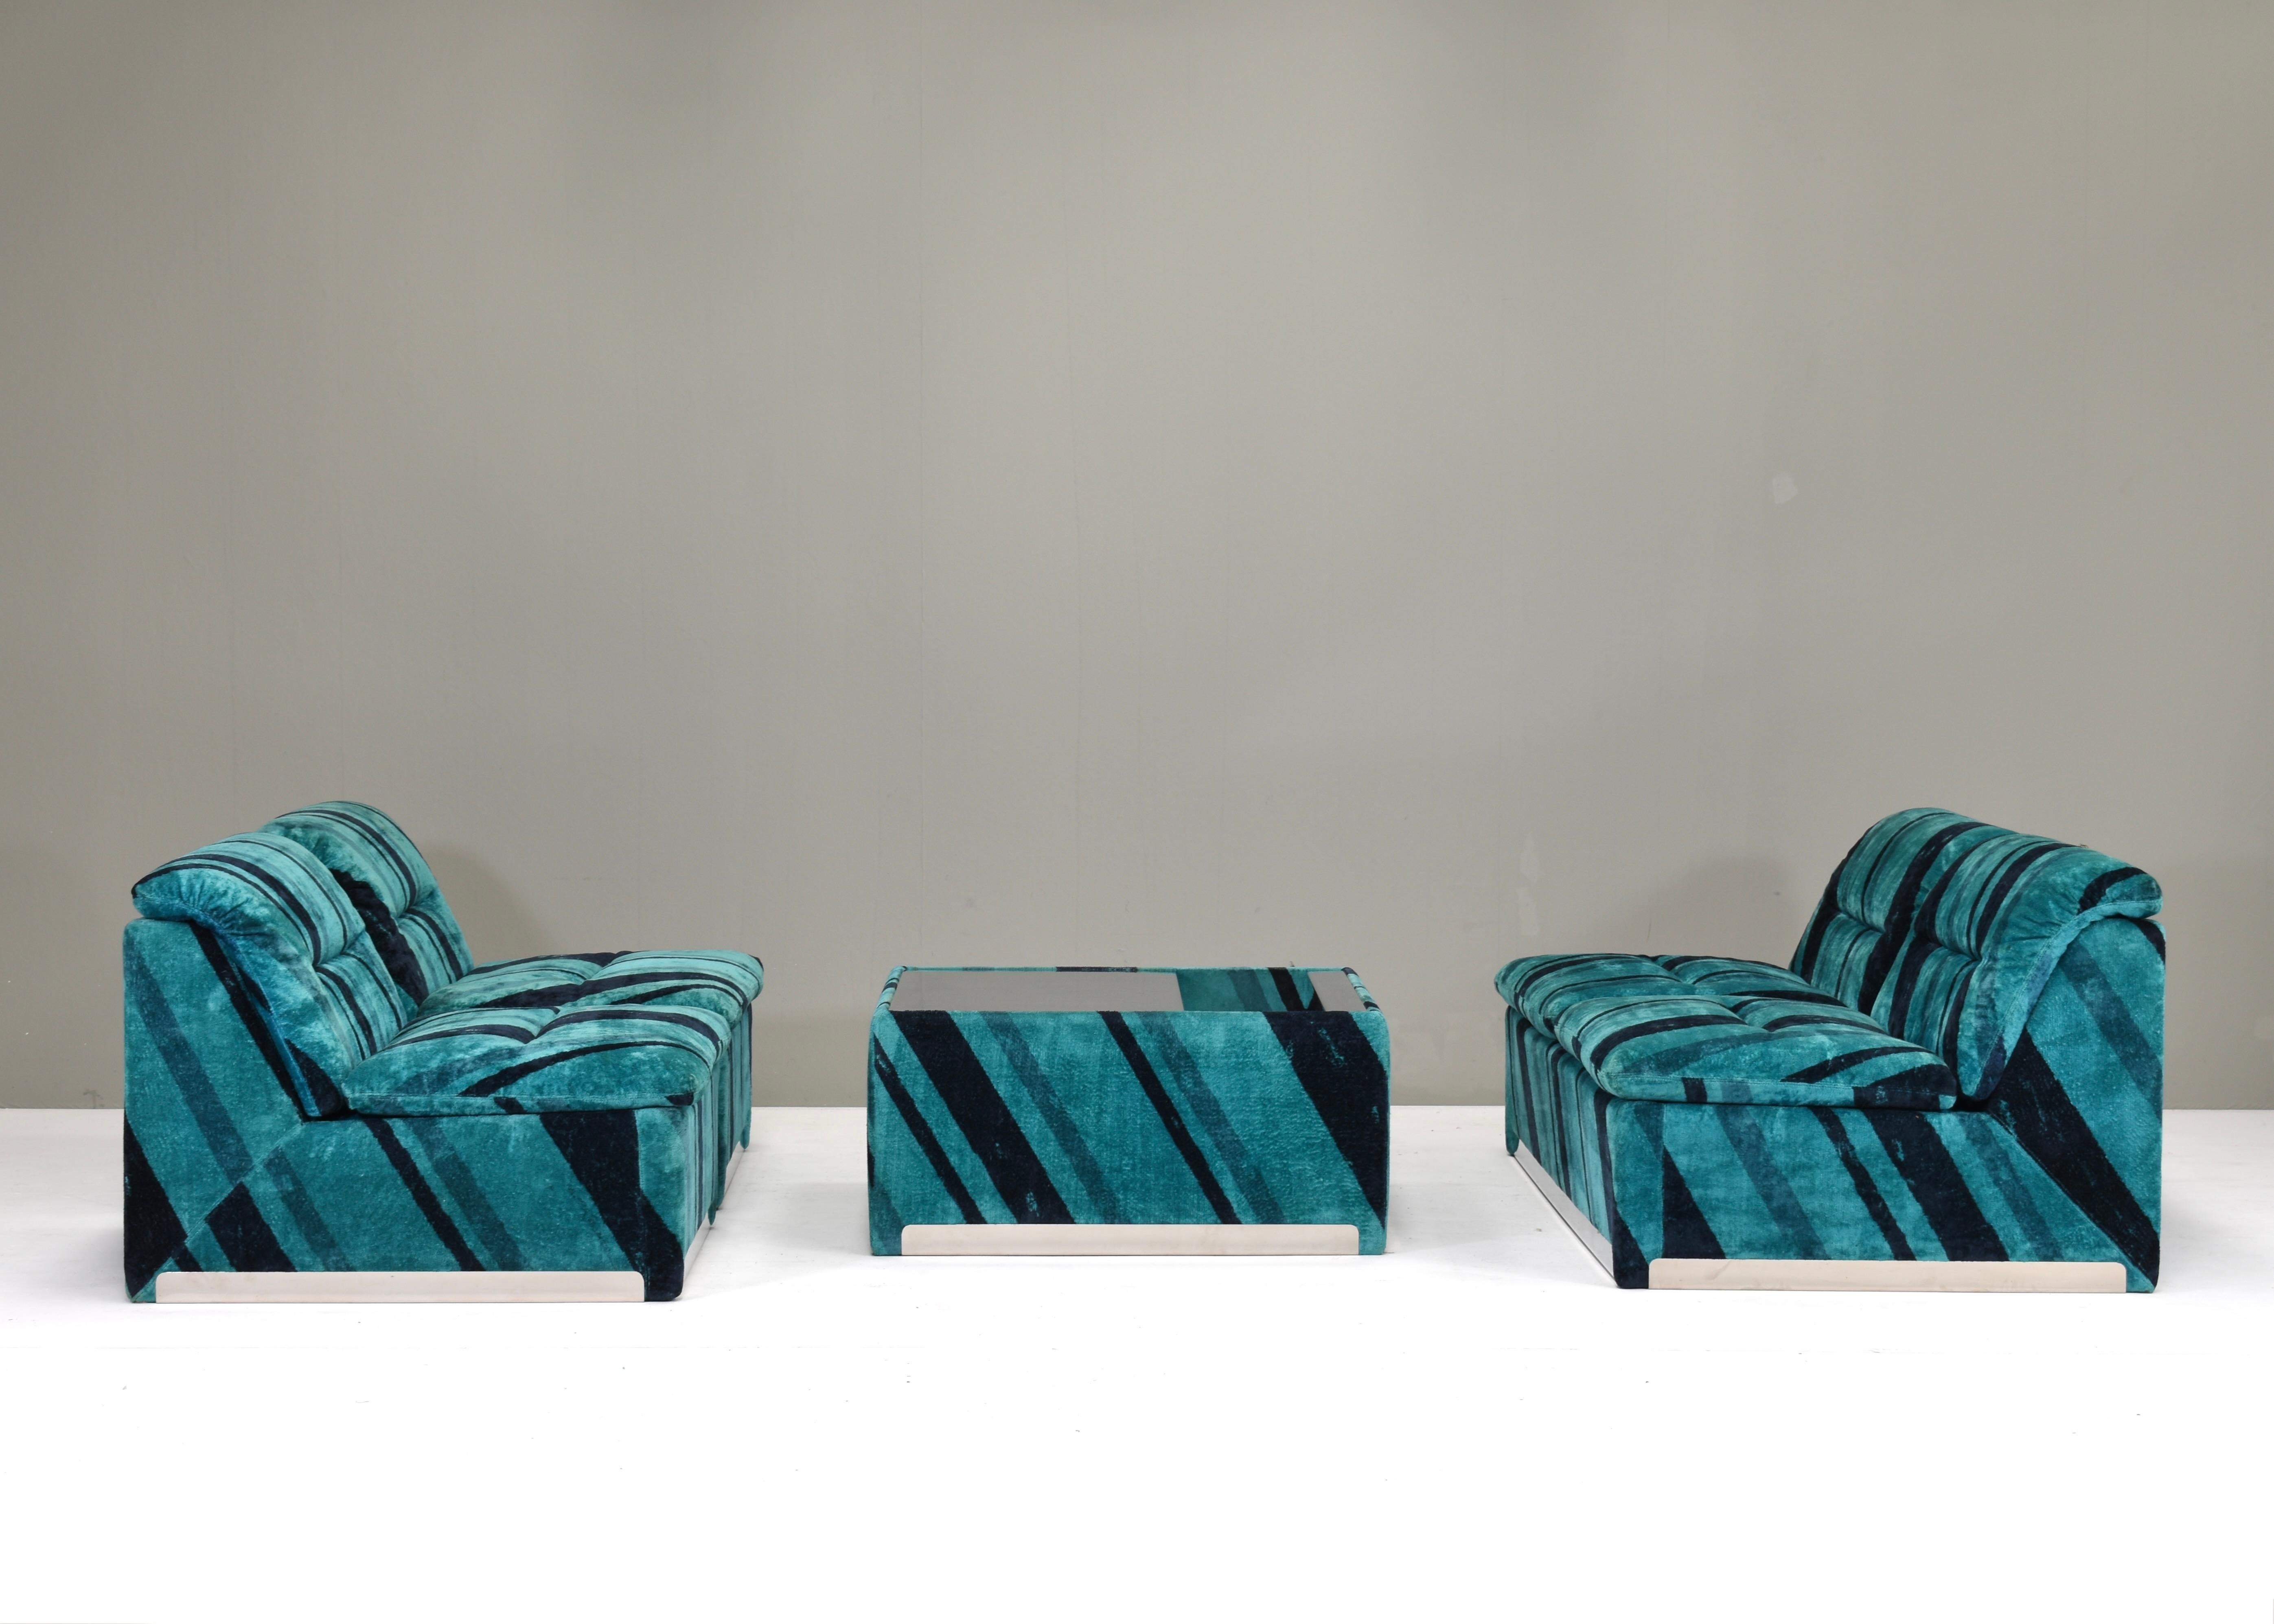 Das modulare Wohnzimmerset P10 Proposals von Giovanni Offredi für SAPORITI ist eine stilvolle und groovige Möbelkollektion, die Ihr Wohnzimmer in einen komfortablen Raum der Extraklasse verwandelt. Die Garnitur ist noch in ihrem ursprünglichen,